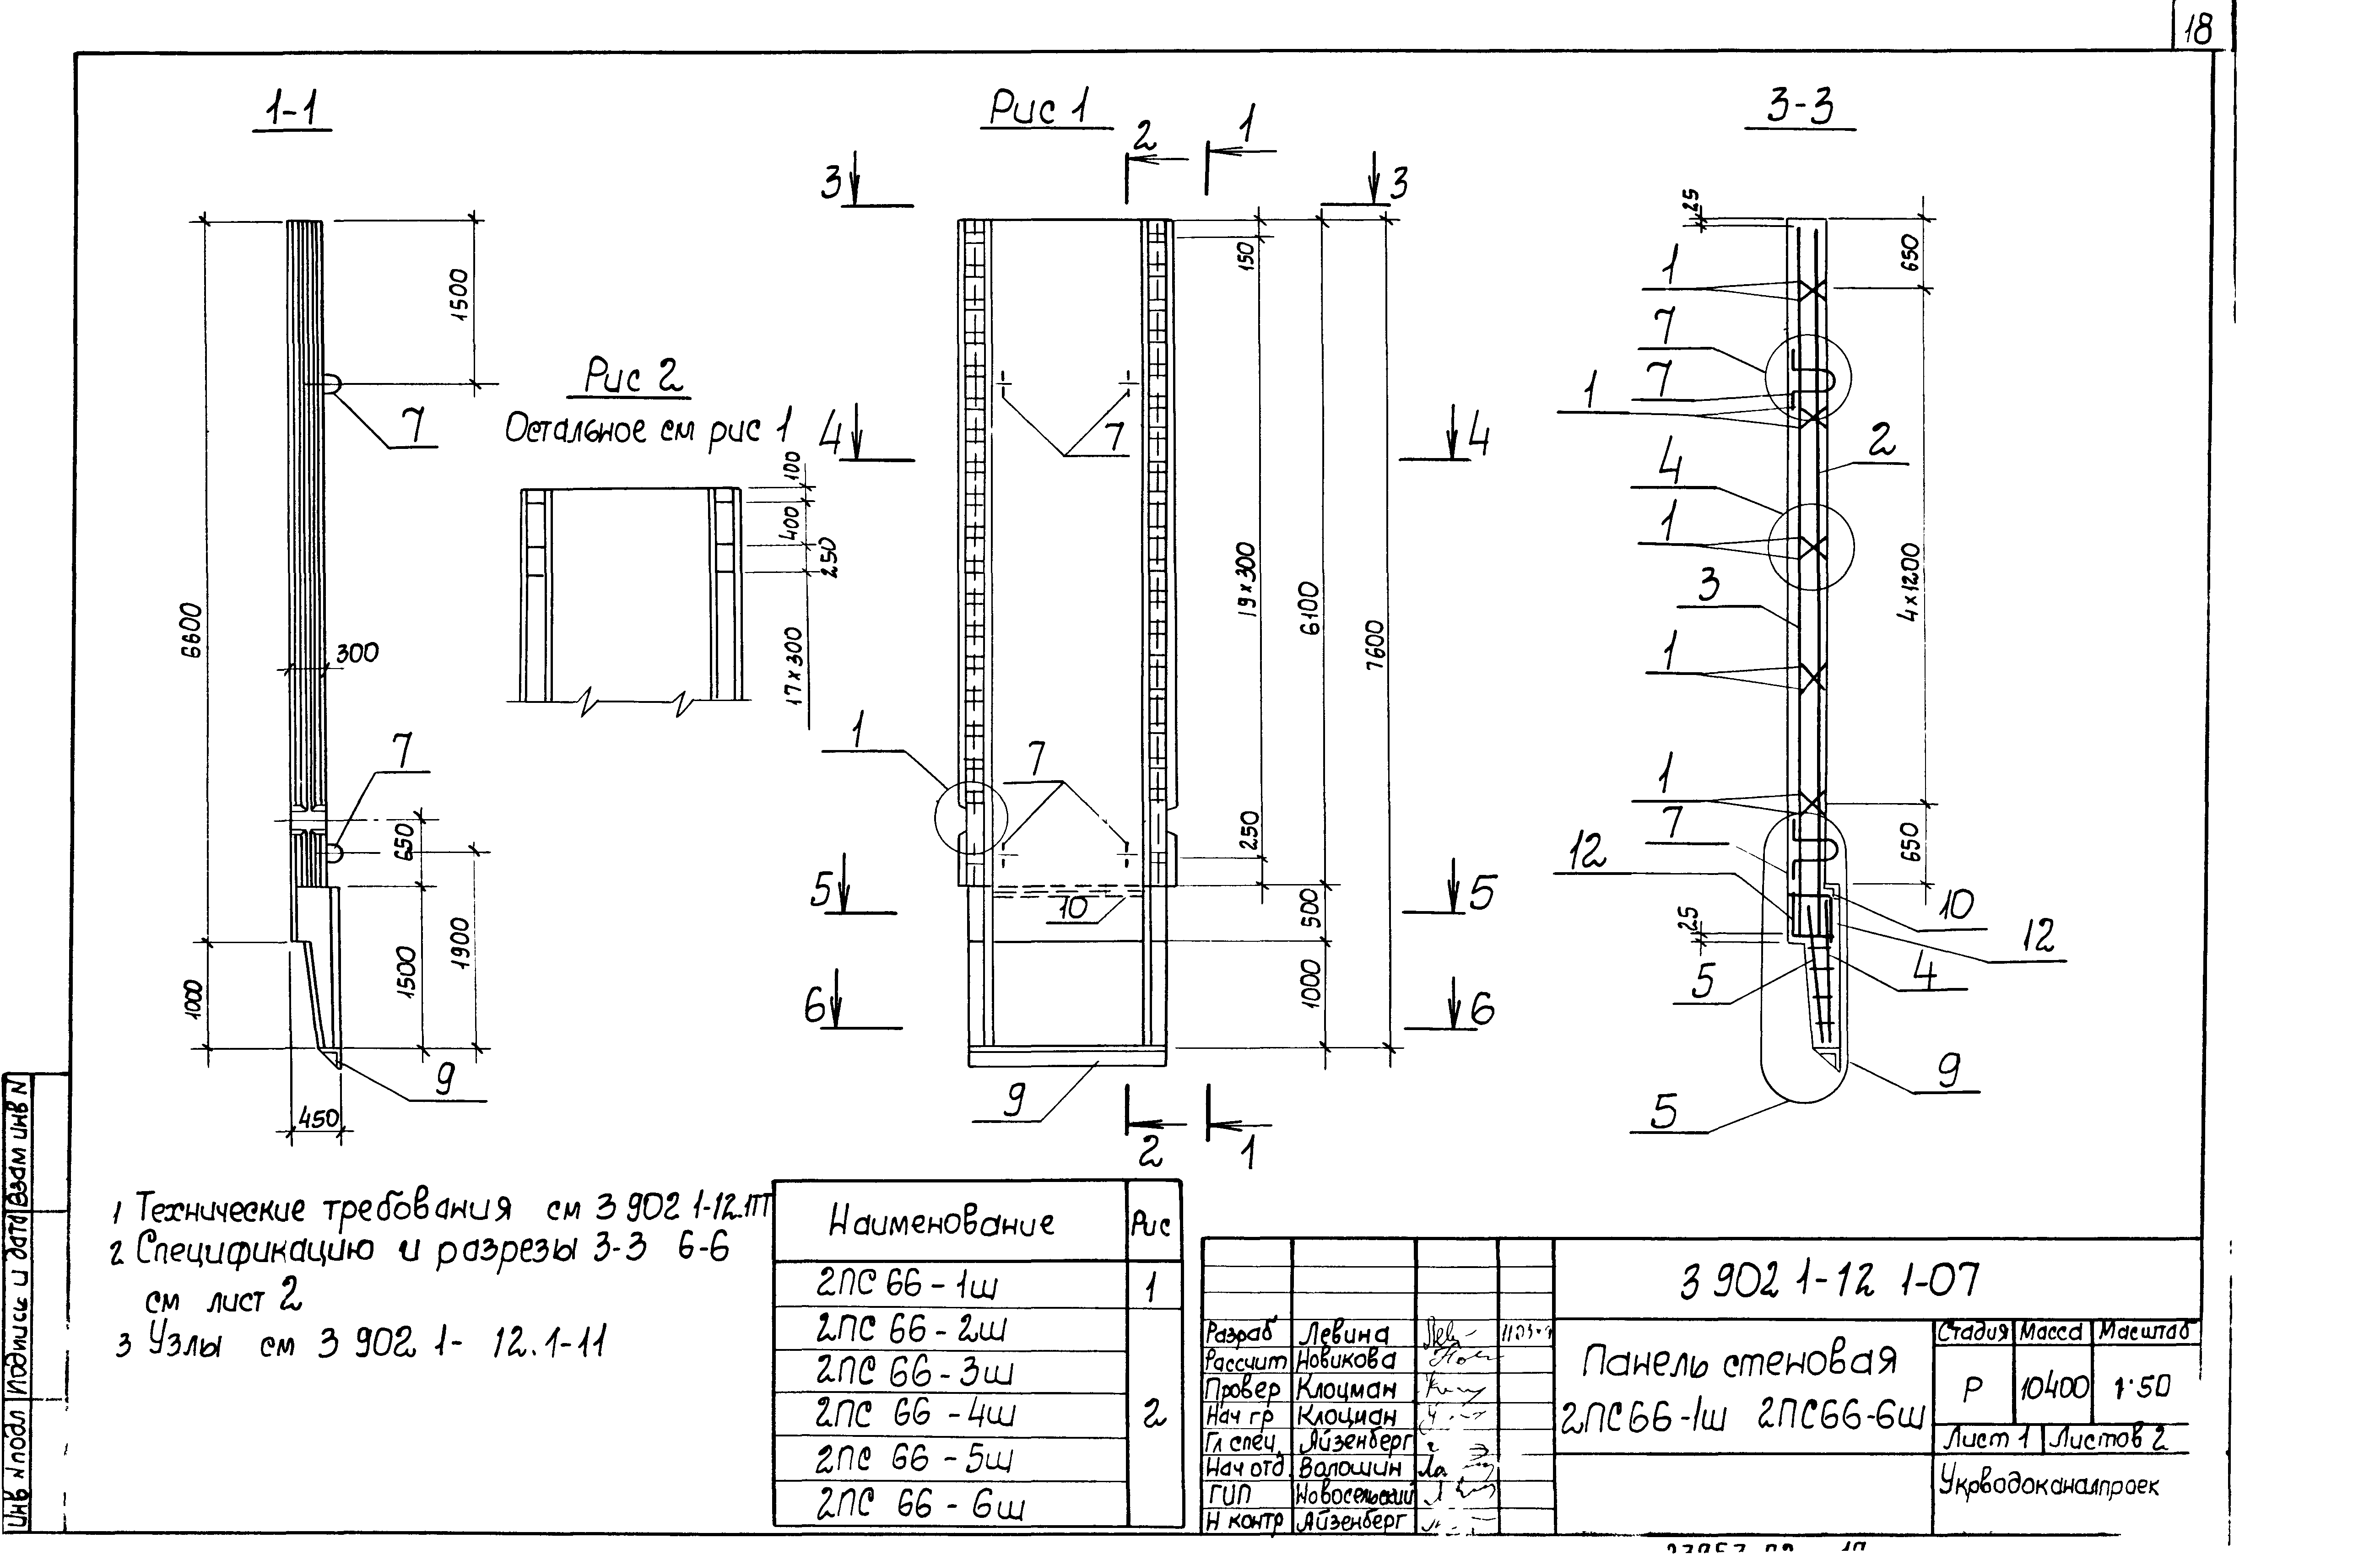 Панель стеновая 2ПС66-2ш Серия 3.902.1-12, вып.1